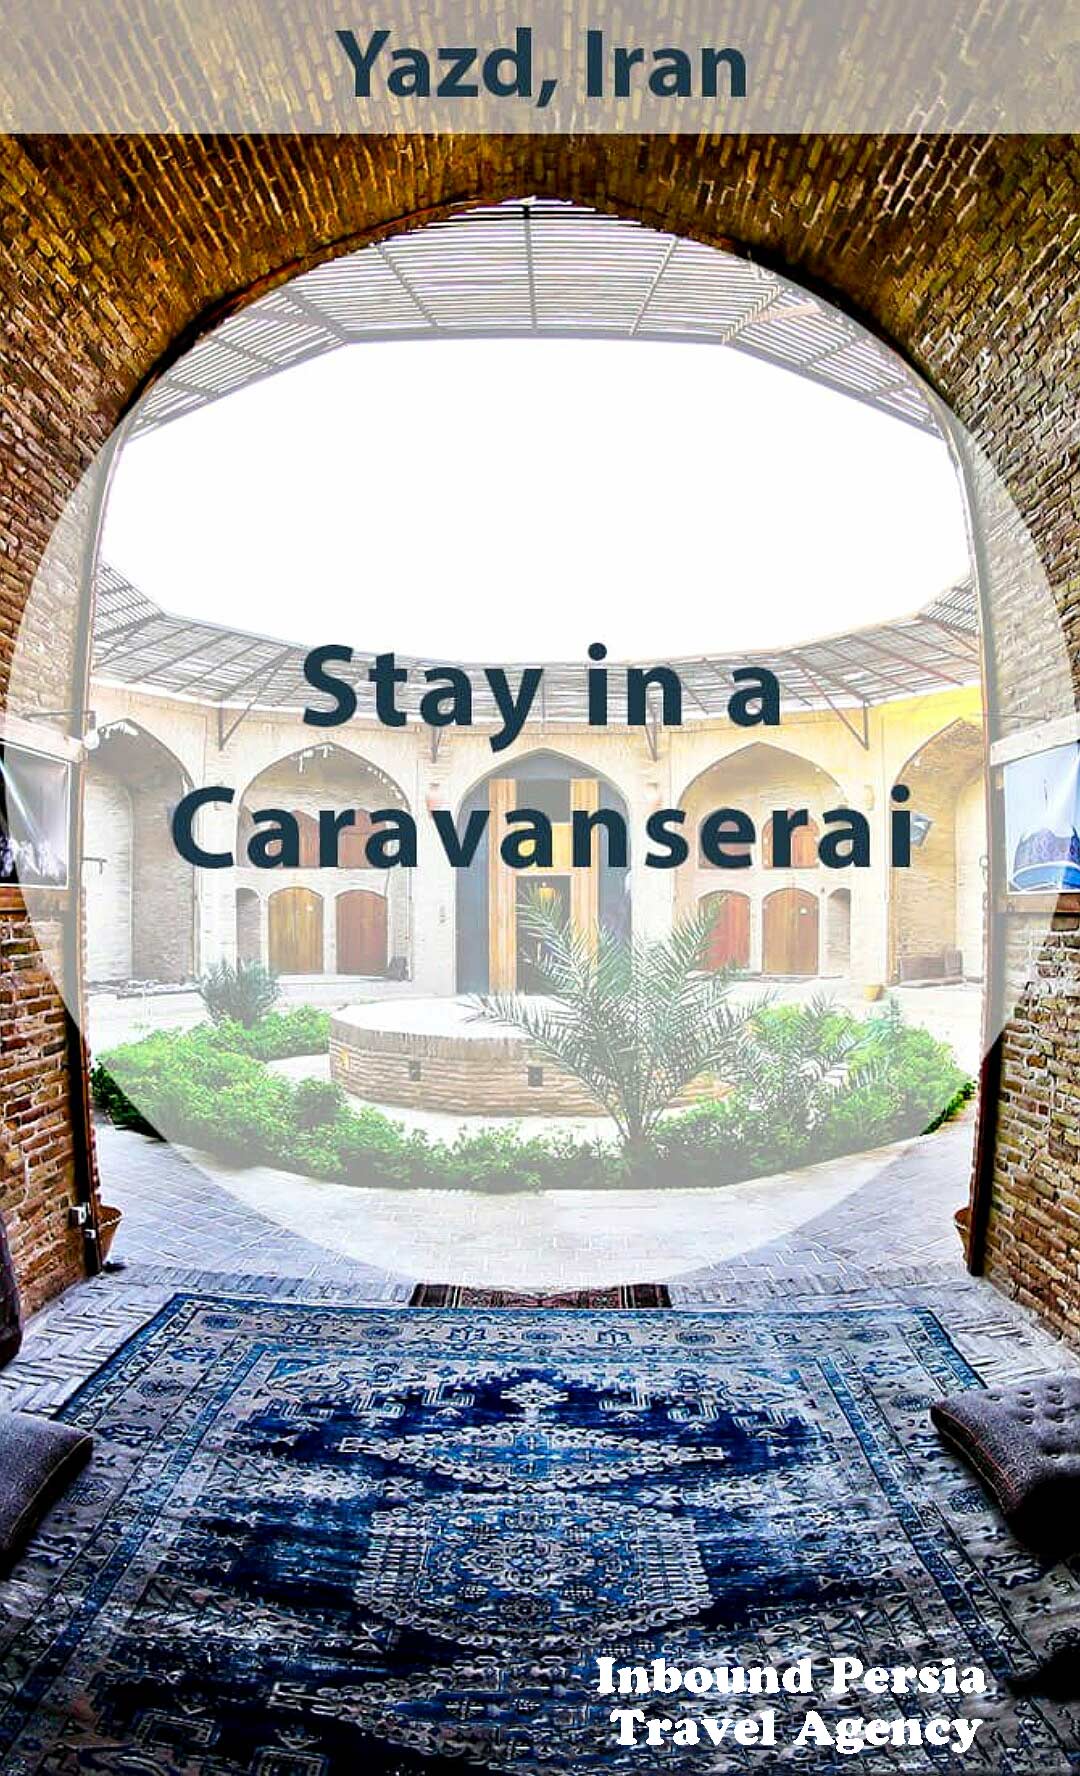 Stay in a Caravanserai